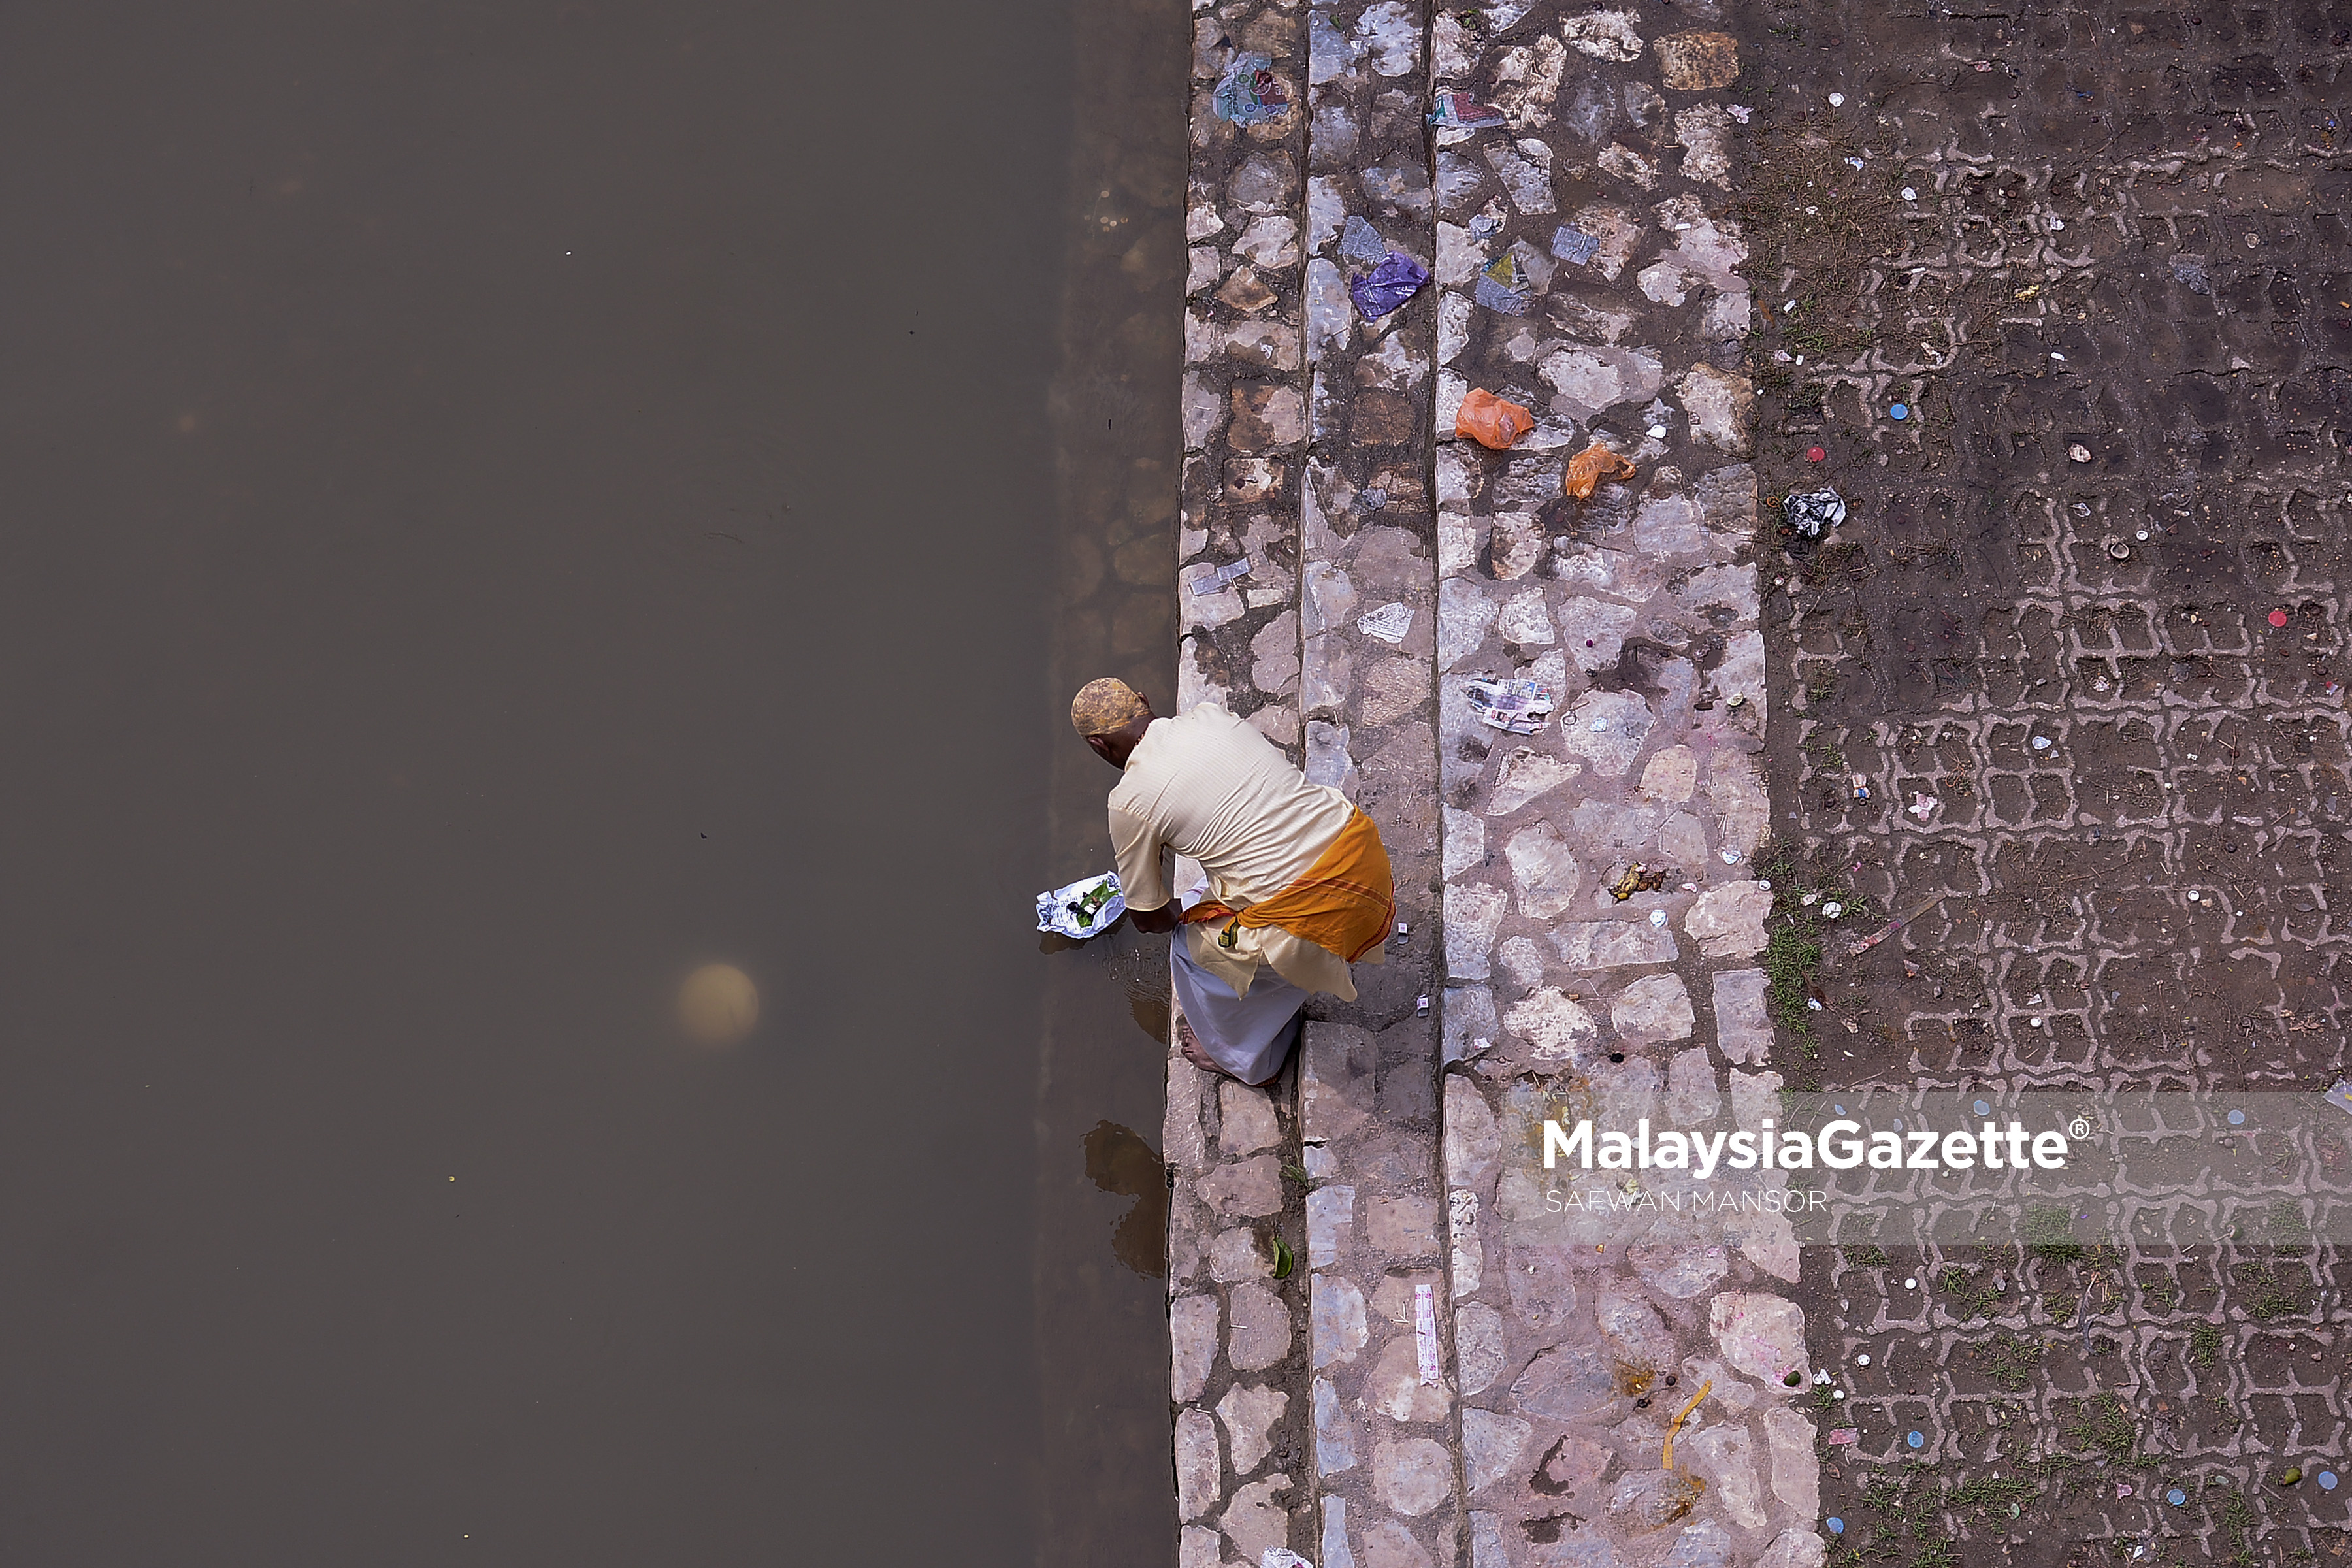 Seorang penganut agama Hindu melakukan salah satu ritual keagamaan mereka di tebing Sungai Gombak sempena sambutan Thaipusam ketika tinjauan lensa Malaysia Gazette di Btu Caves, Selangor. foto SAFWAN MANSOR, 08 FEBRUARI 2017